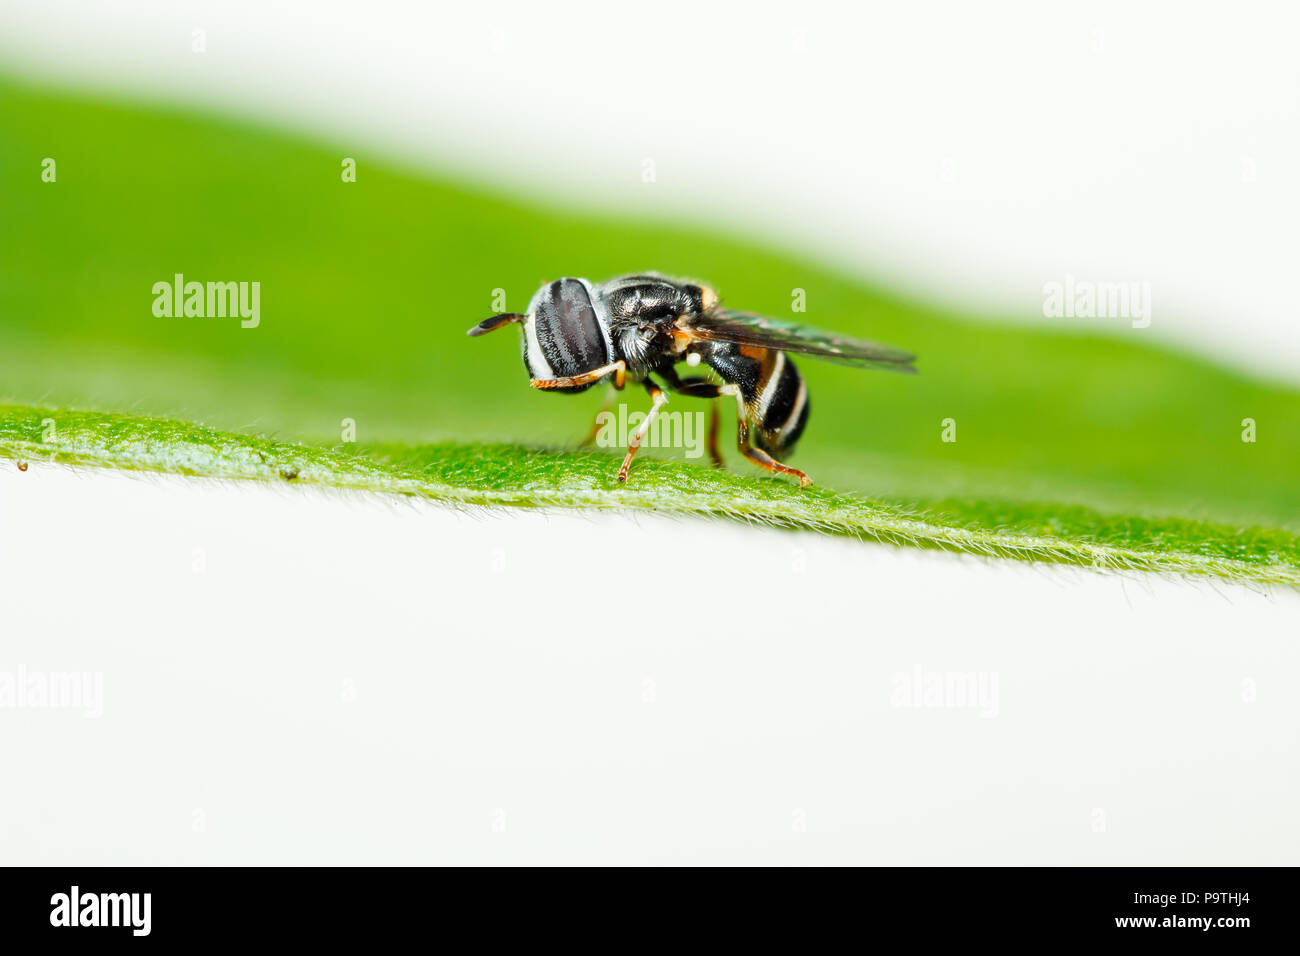 Lindo imitan abejas flor/syrphid hoverfly (mosca) sobre hojas de hierba verde Foto de stock